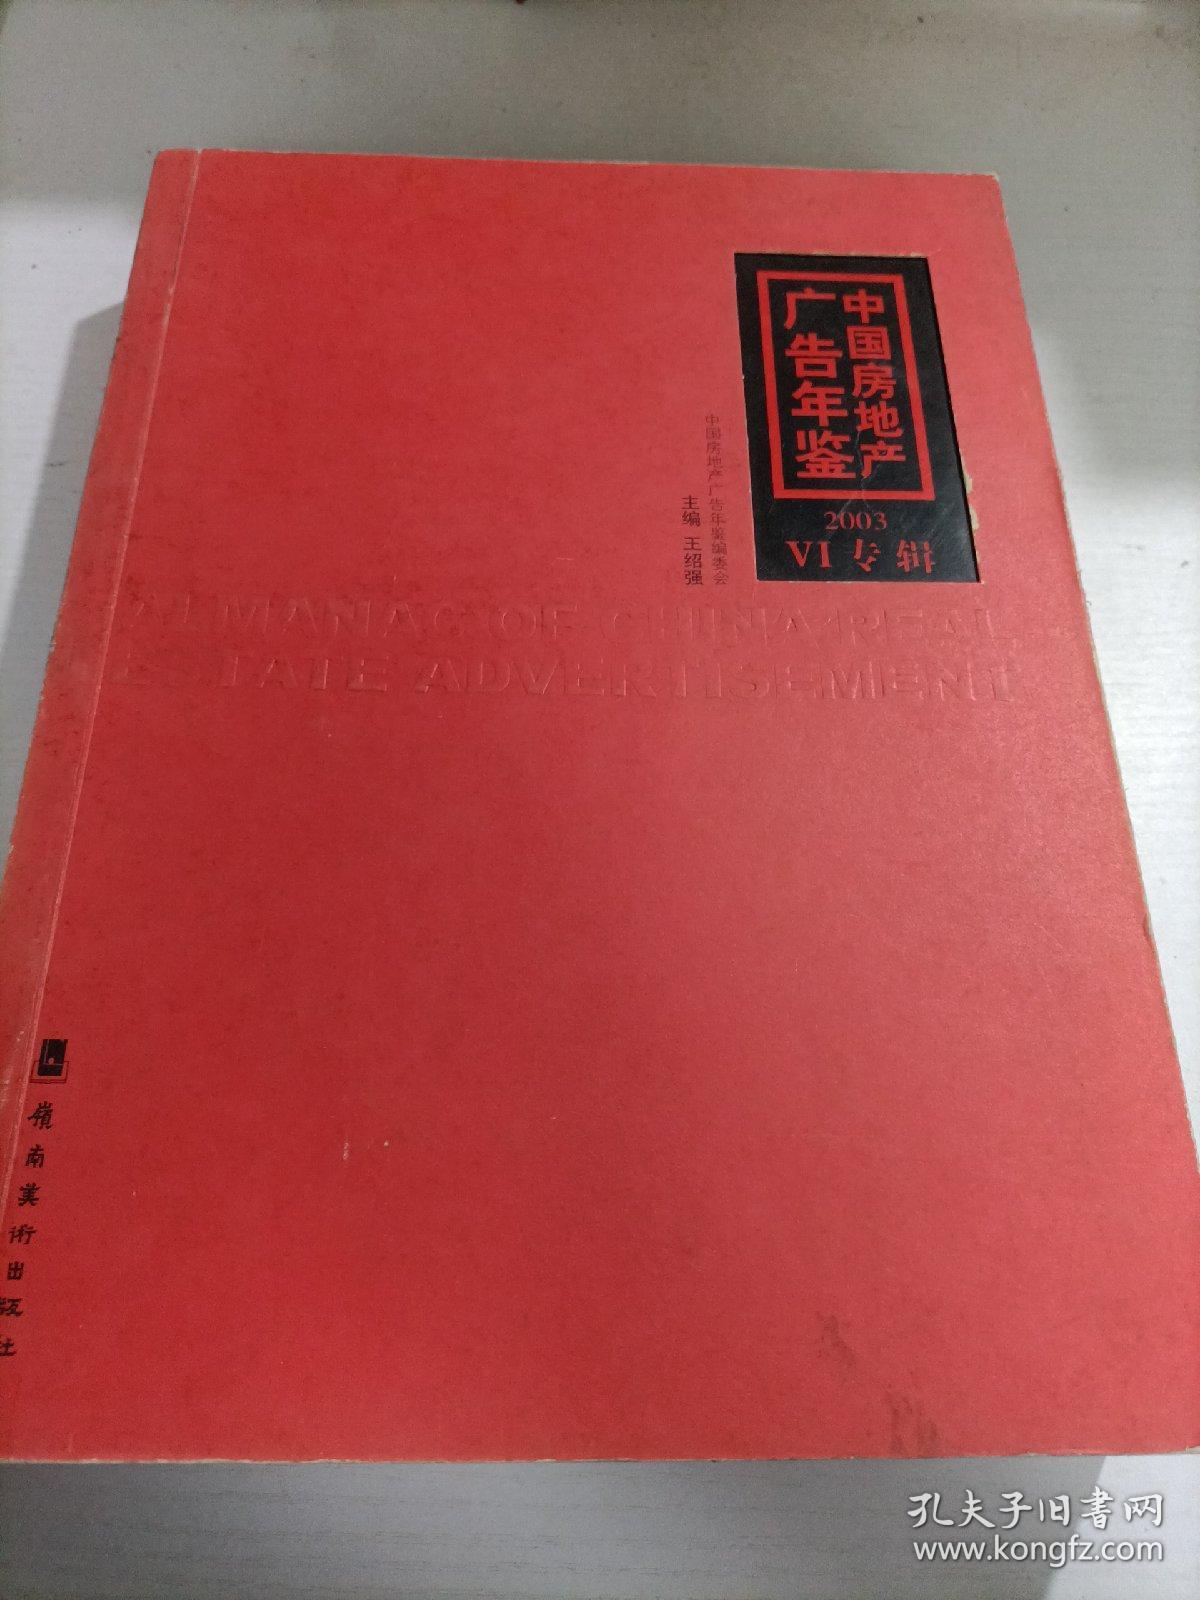 中国房地产广告年鉴2003VI专辑